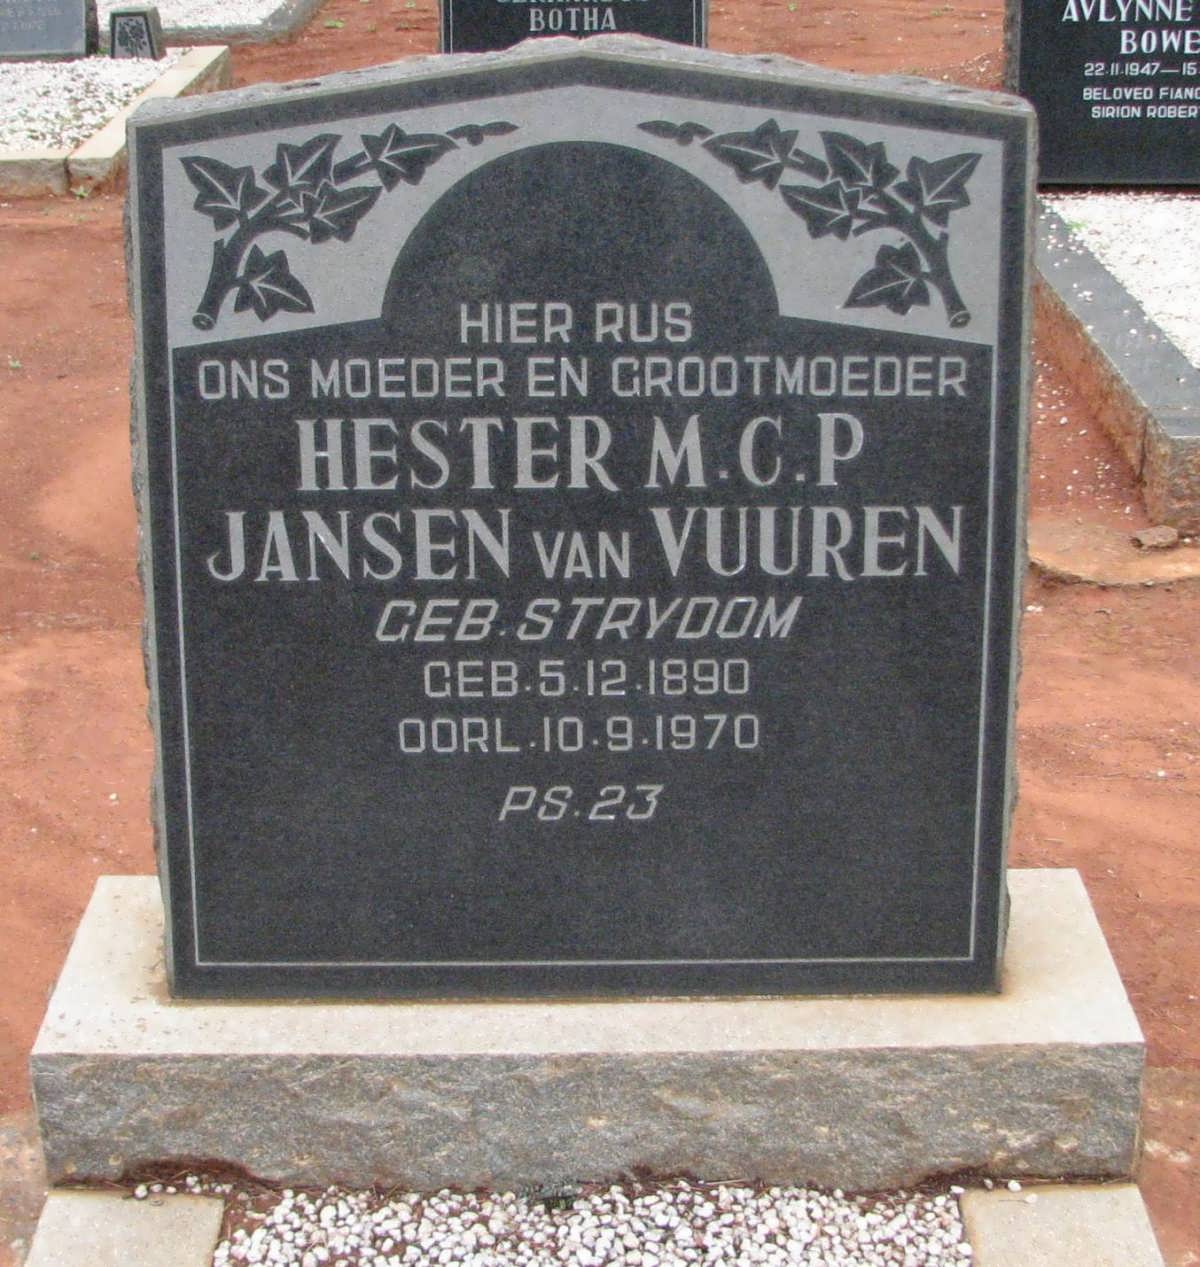 VUUREN Hester M.C.P., Jansen van nee STRYDOM 1890-1970